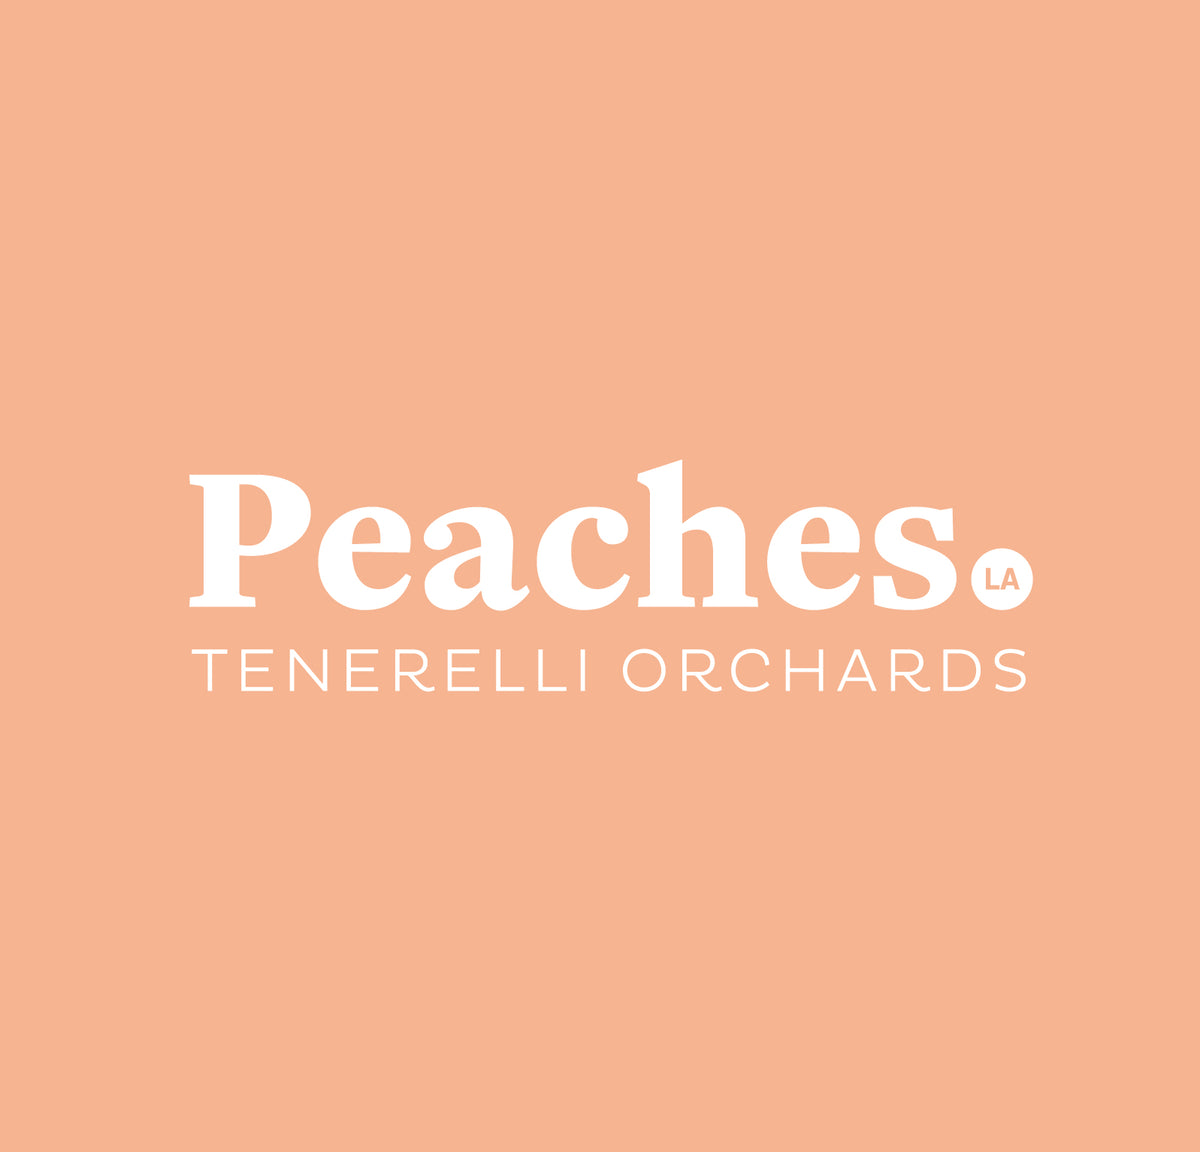 Peaches.la